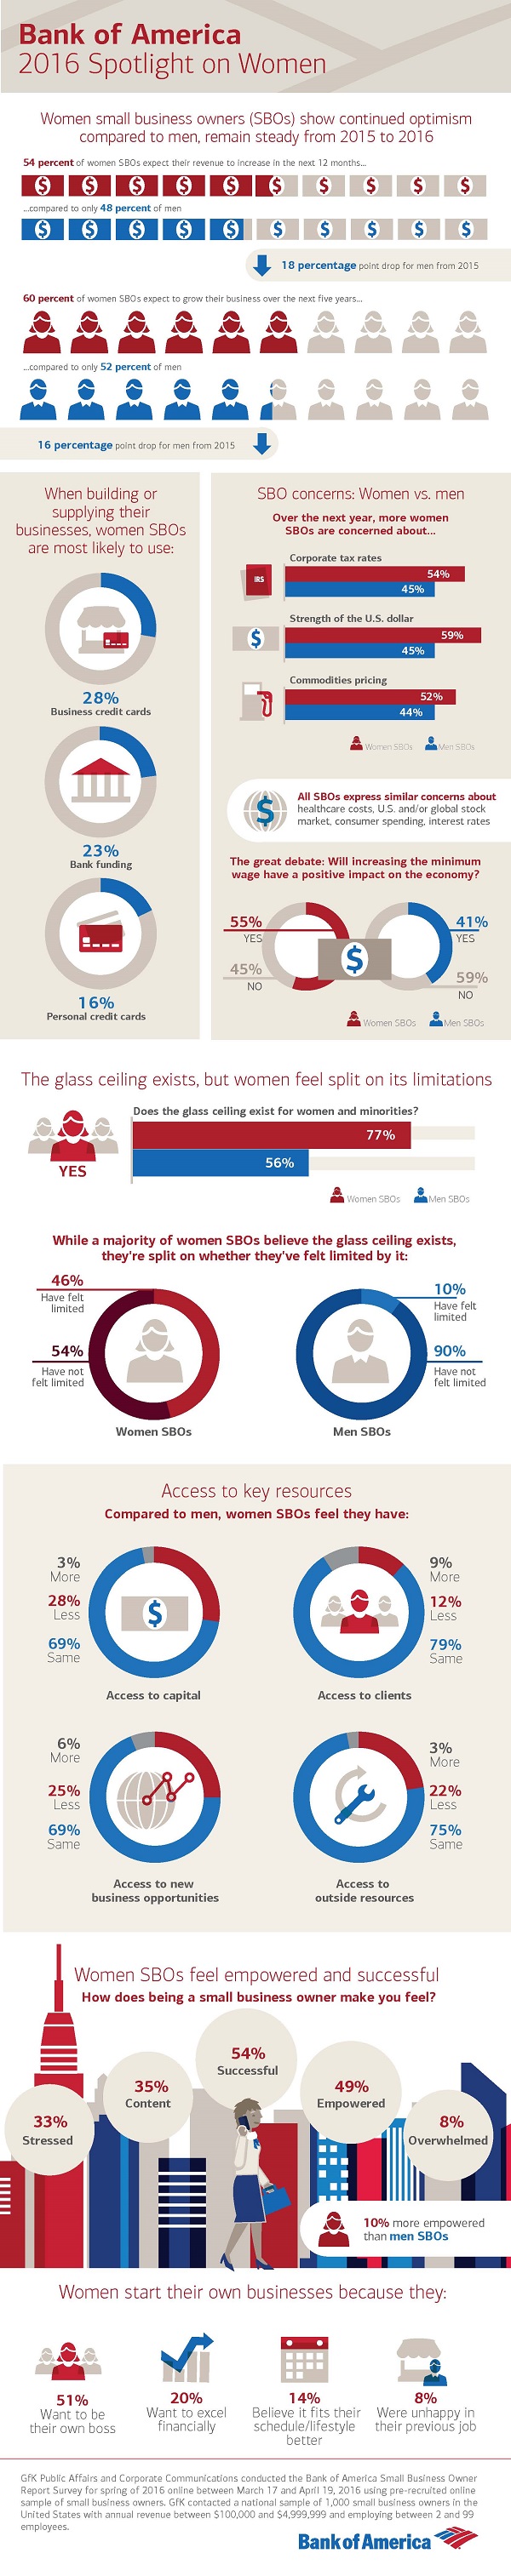 Women's Spotlight Infographic_7 28 16_FINAL